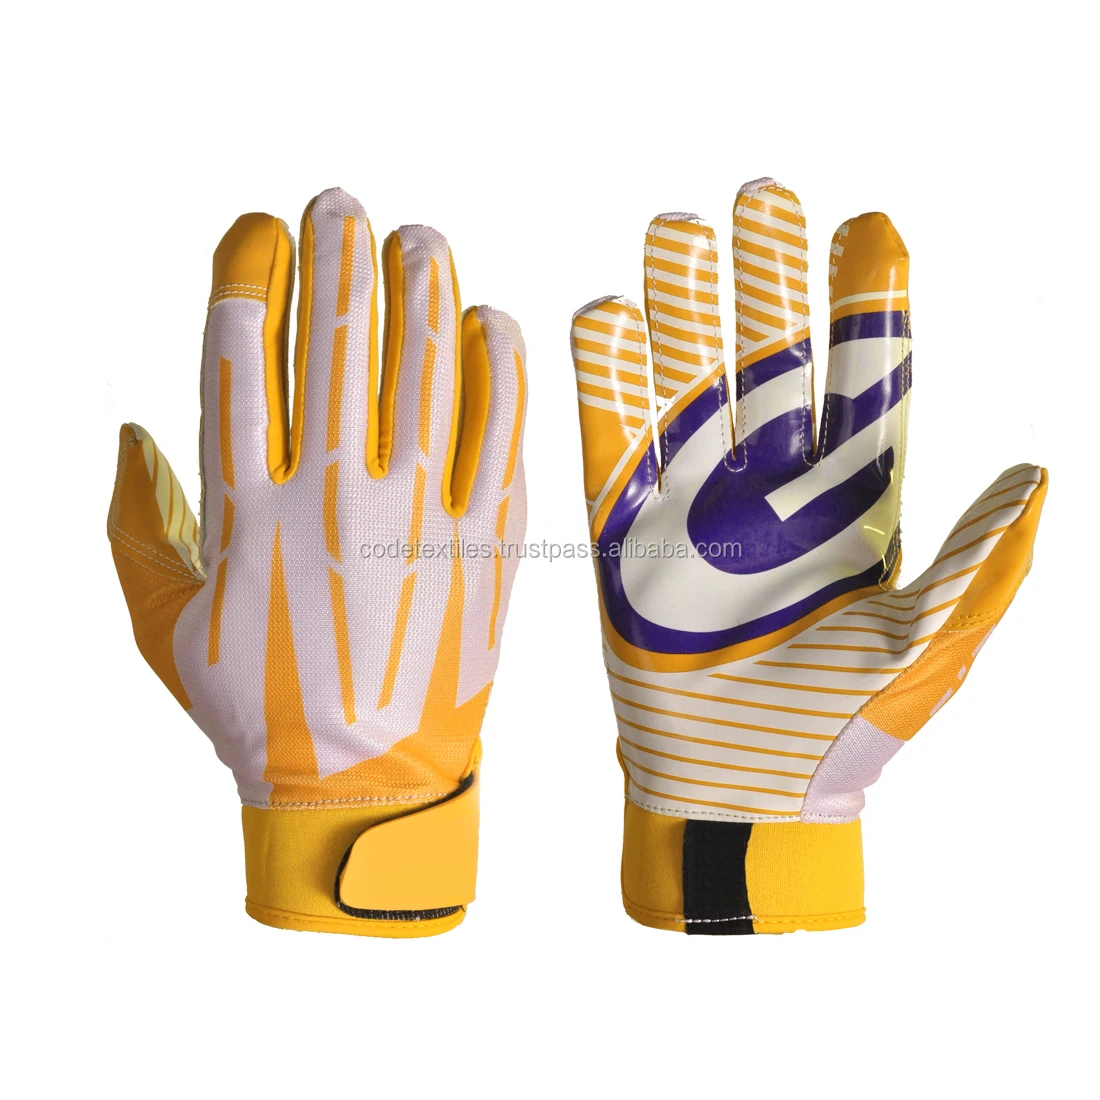 receiver gloves